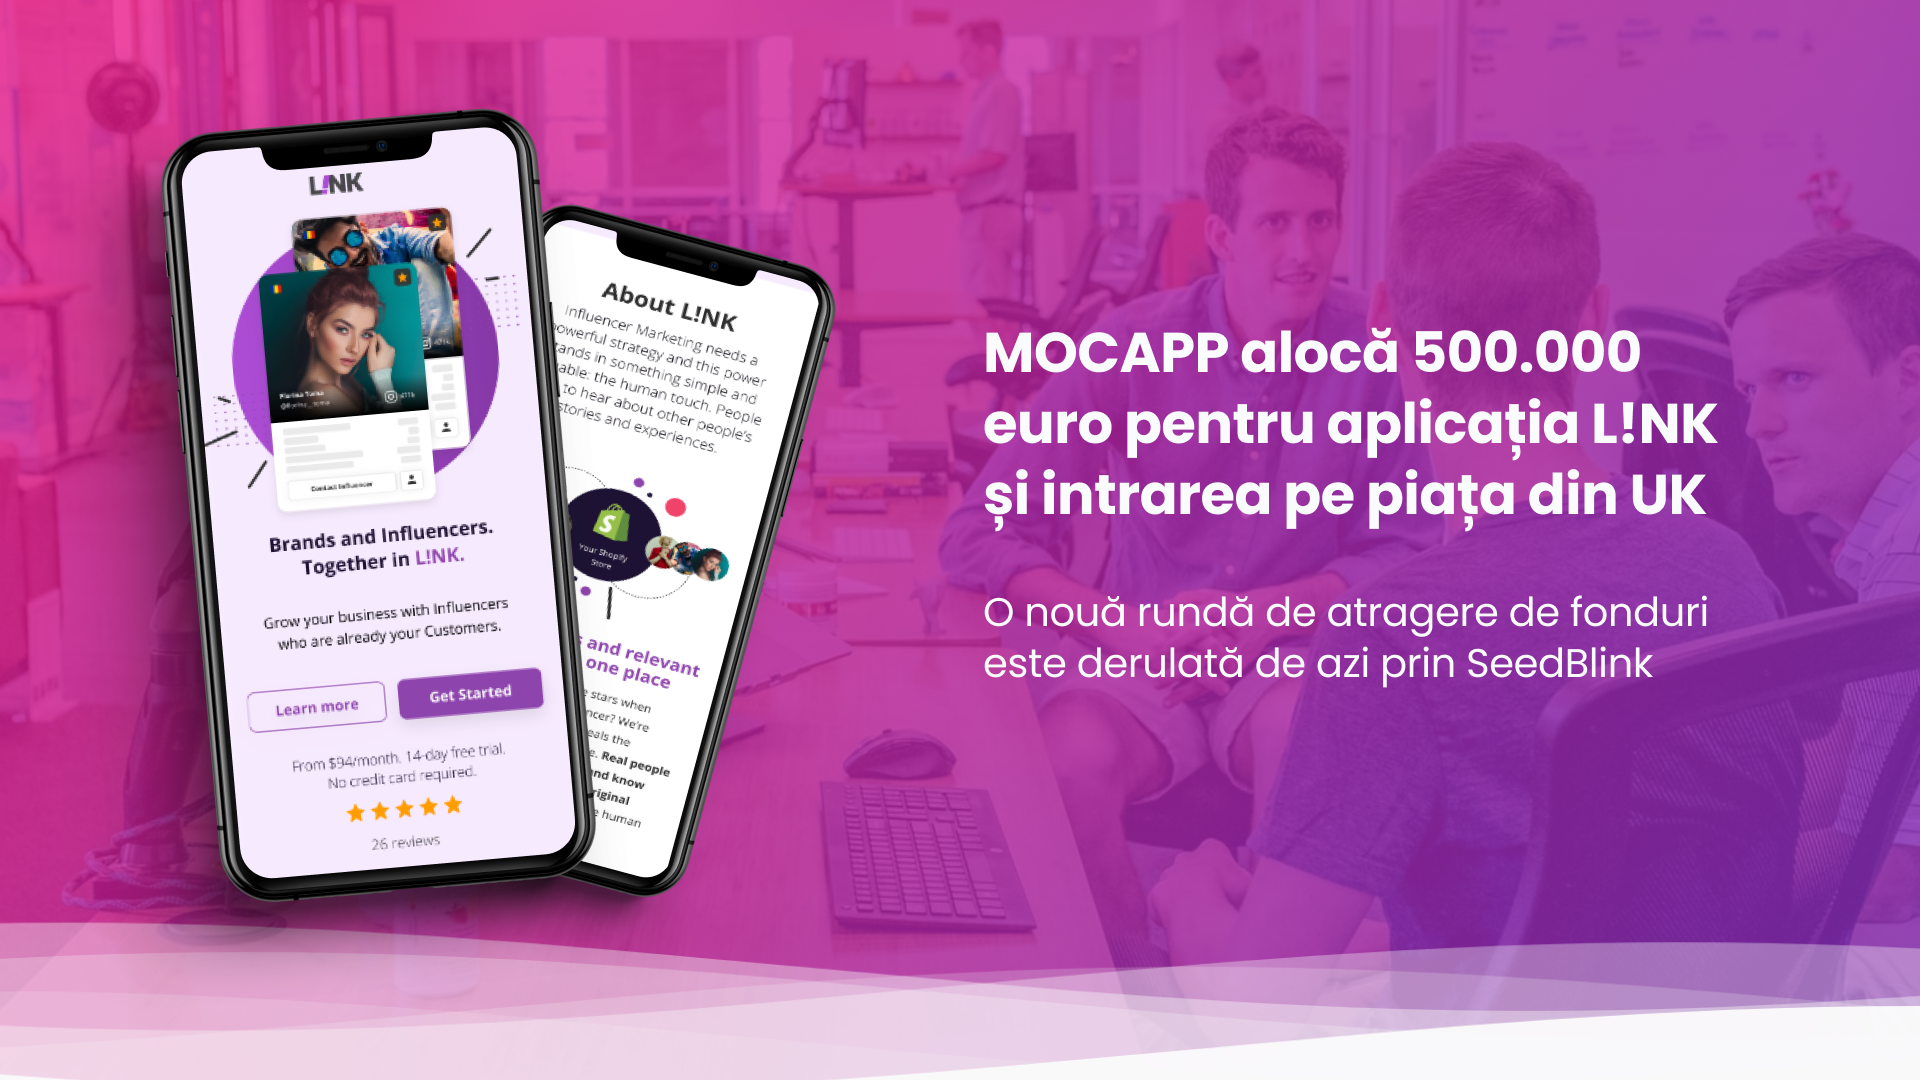 O noua rundă de finanțare pe SeedBlink pentru MOCAPP || deschisă de azi investitorilor